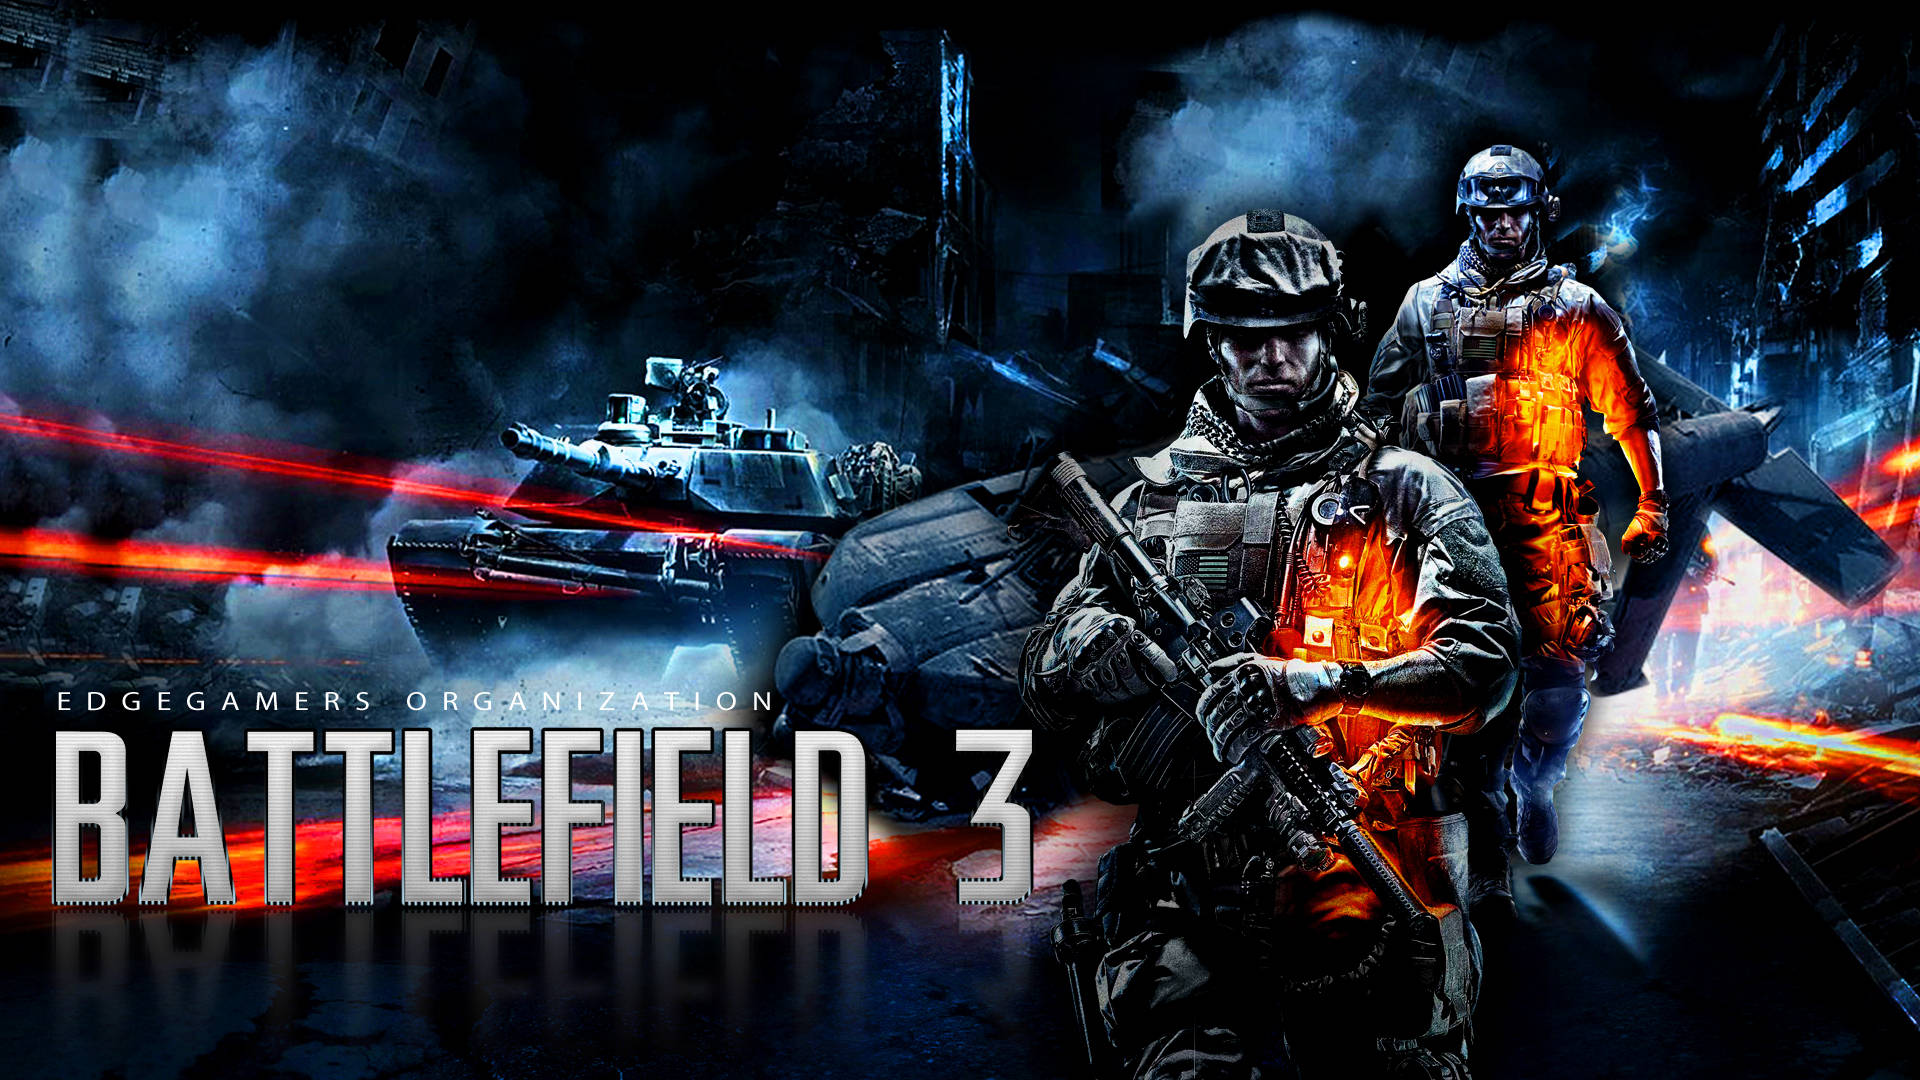 Battlefield 3 Abstract Poster Wallpaper